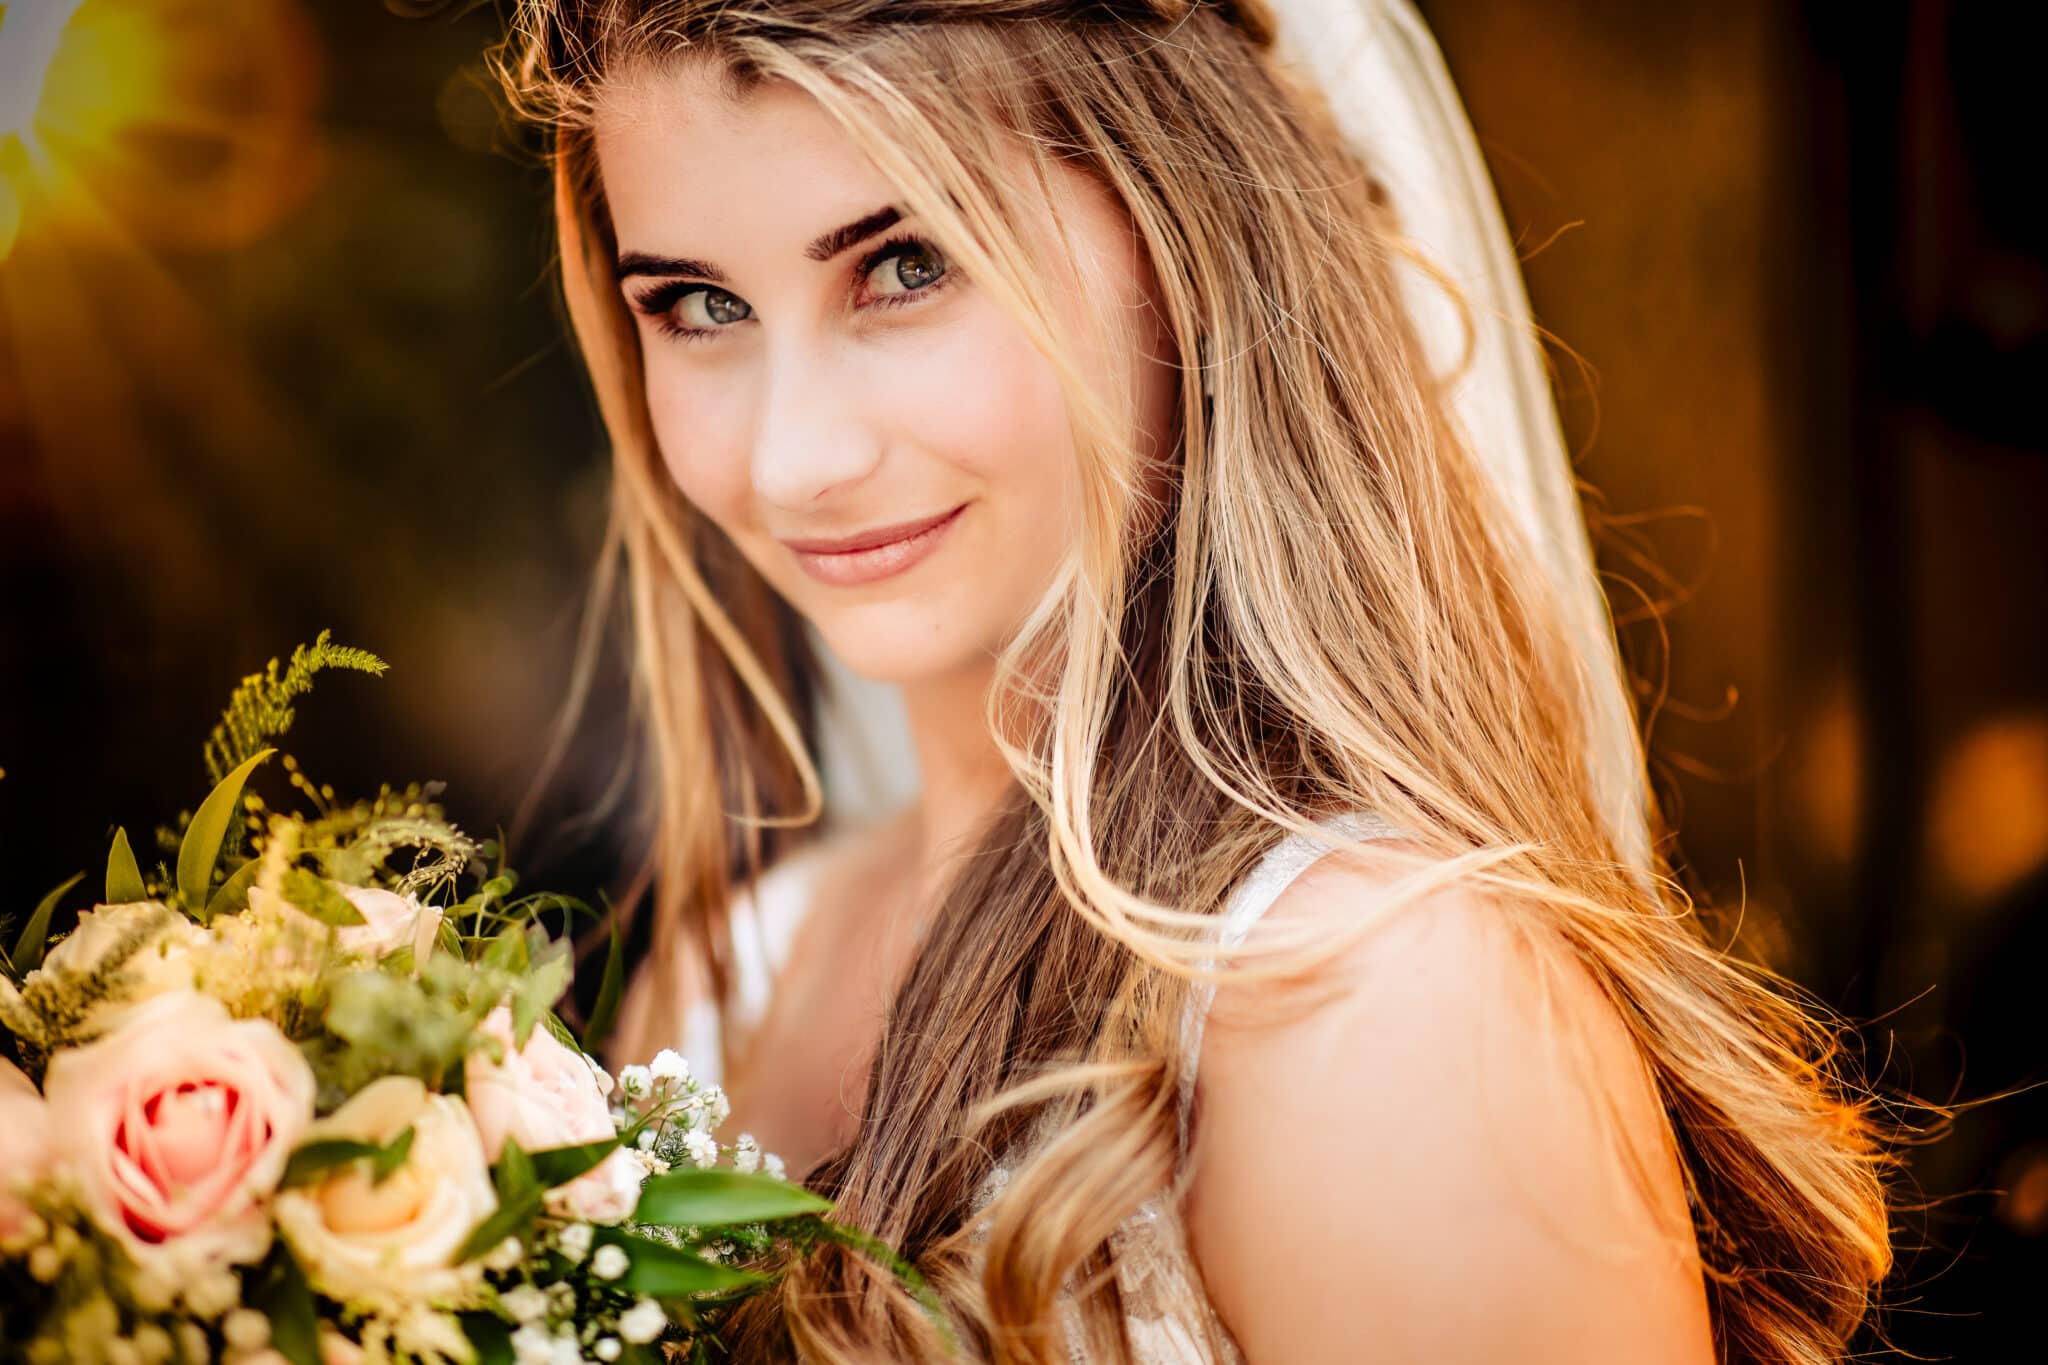 Een close-up van de prachtige bruidsboeket, met typische Volendamse bloemen, zoals tulpen en klompen, als eerbetoon aan de unieke trouwlocatie.